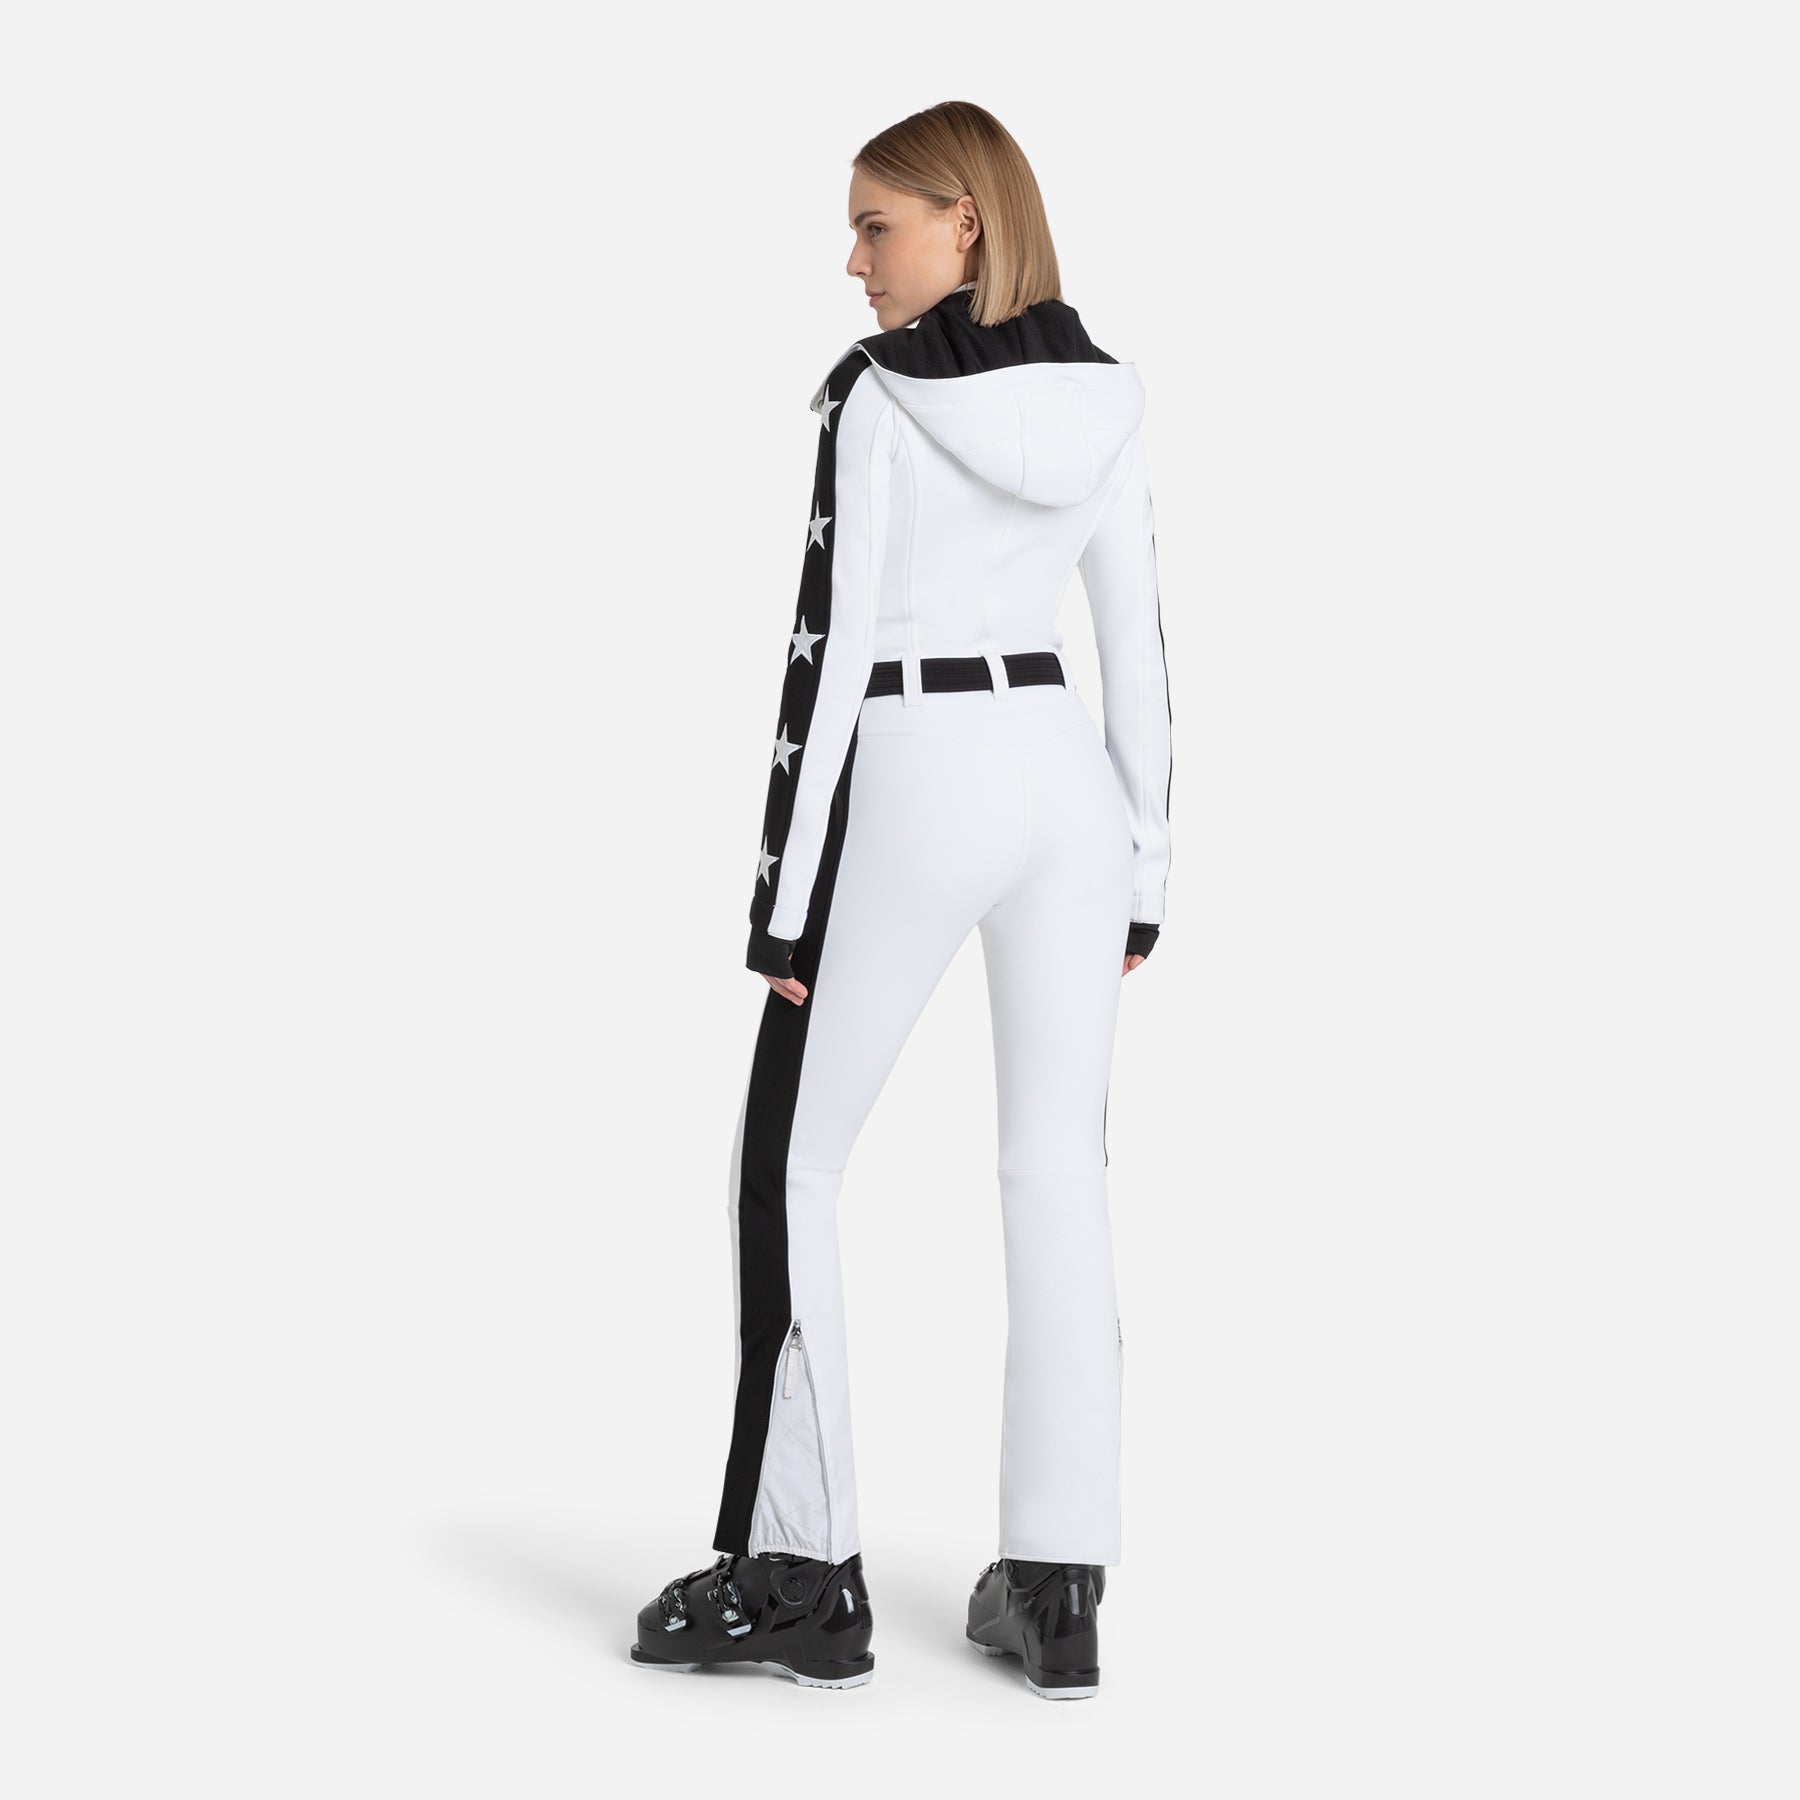 Magic Ghoster Ski Suit